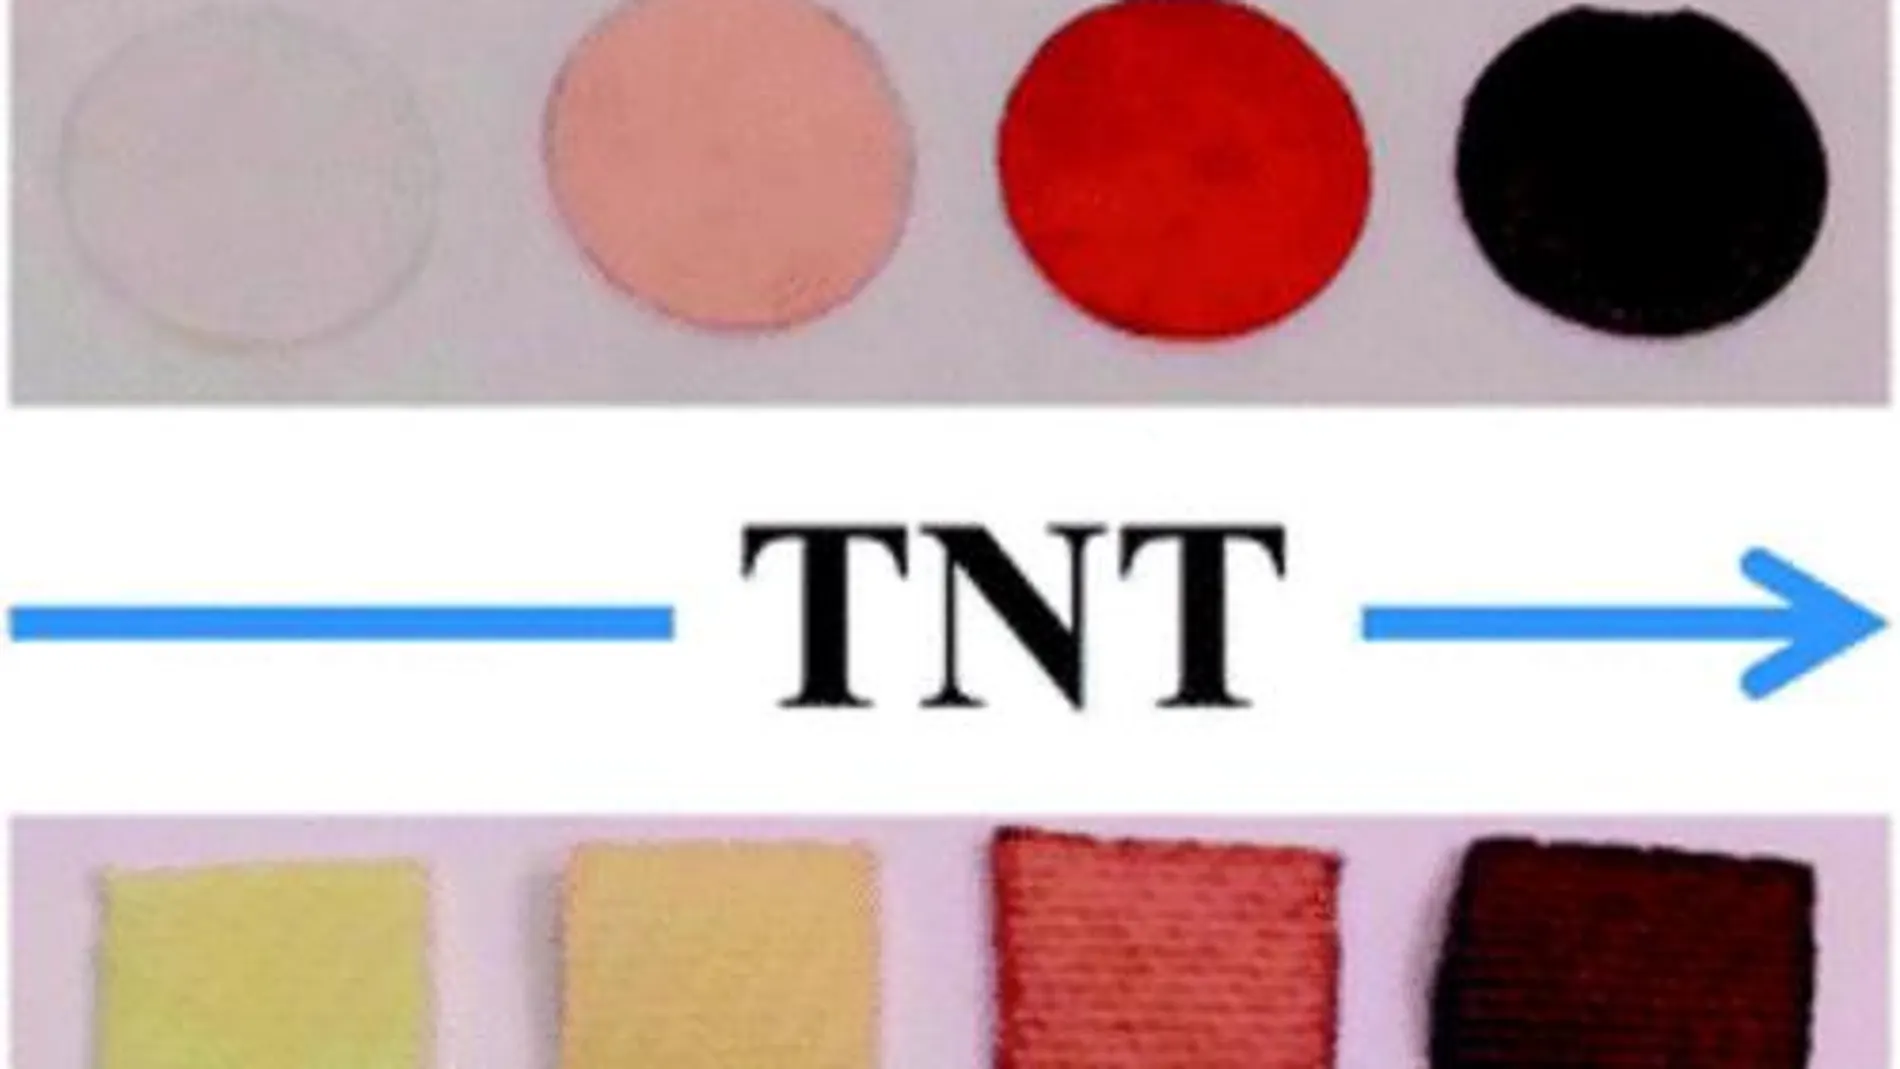 Polímero que cambia de color cuando detecta TNT